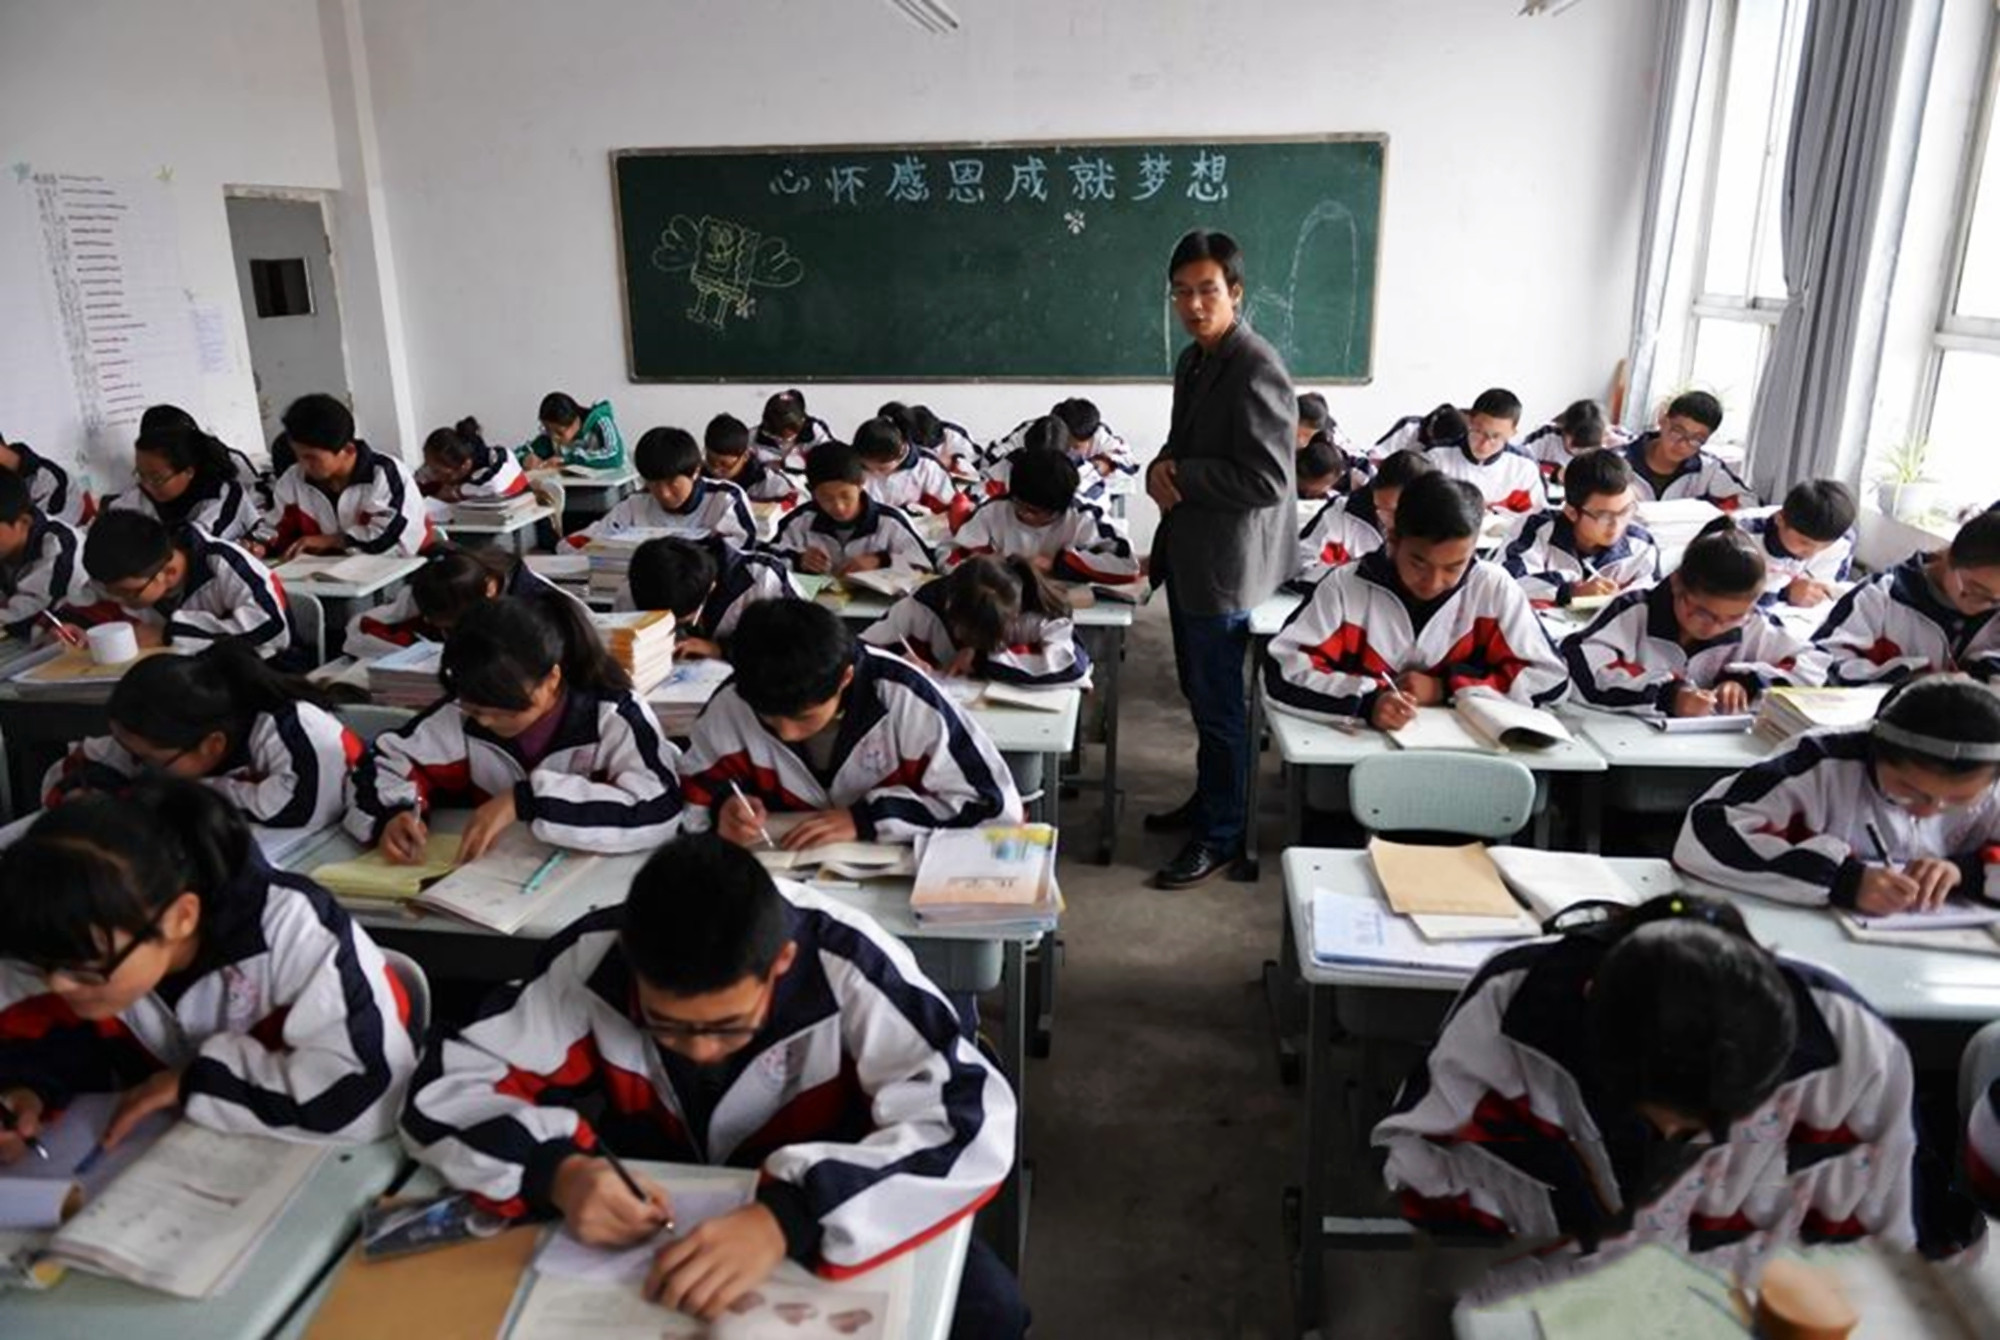 日韩中学生的课间生活: 一个没眼看一个玩得开, 中国学生实名羡慕